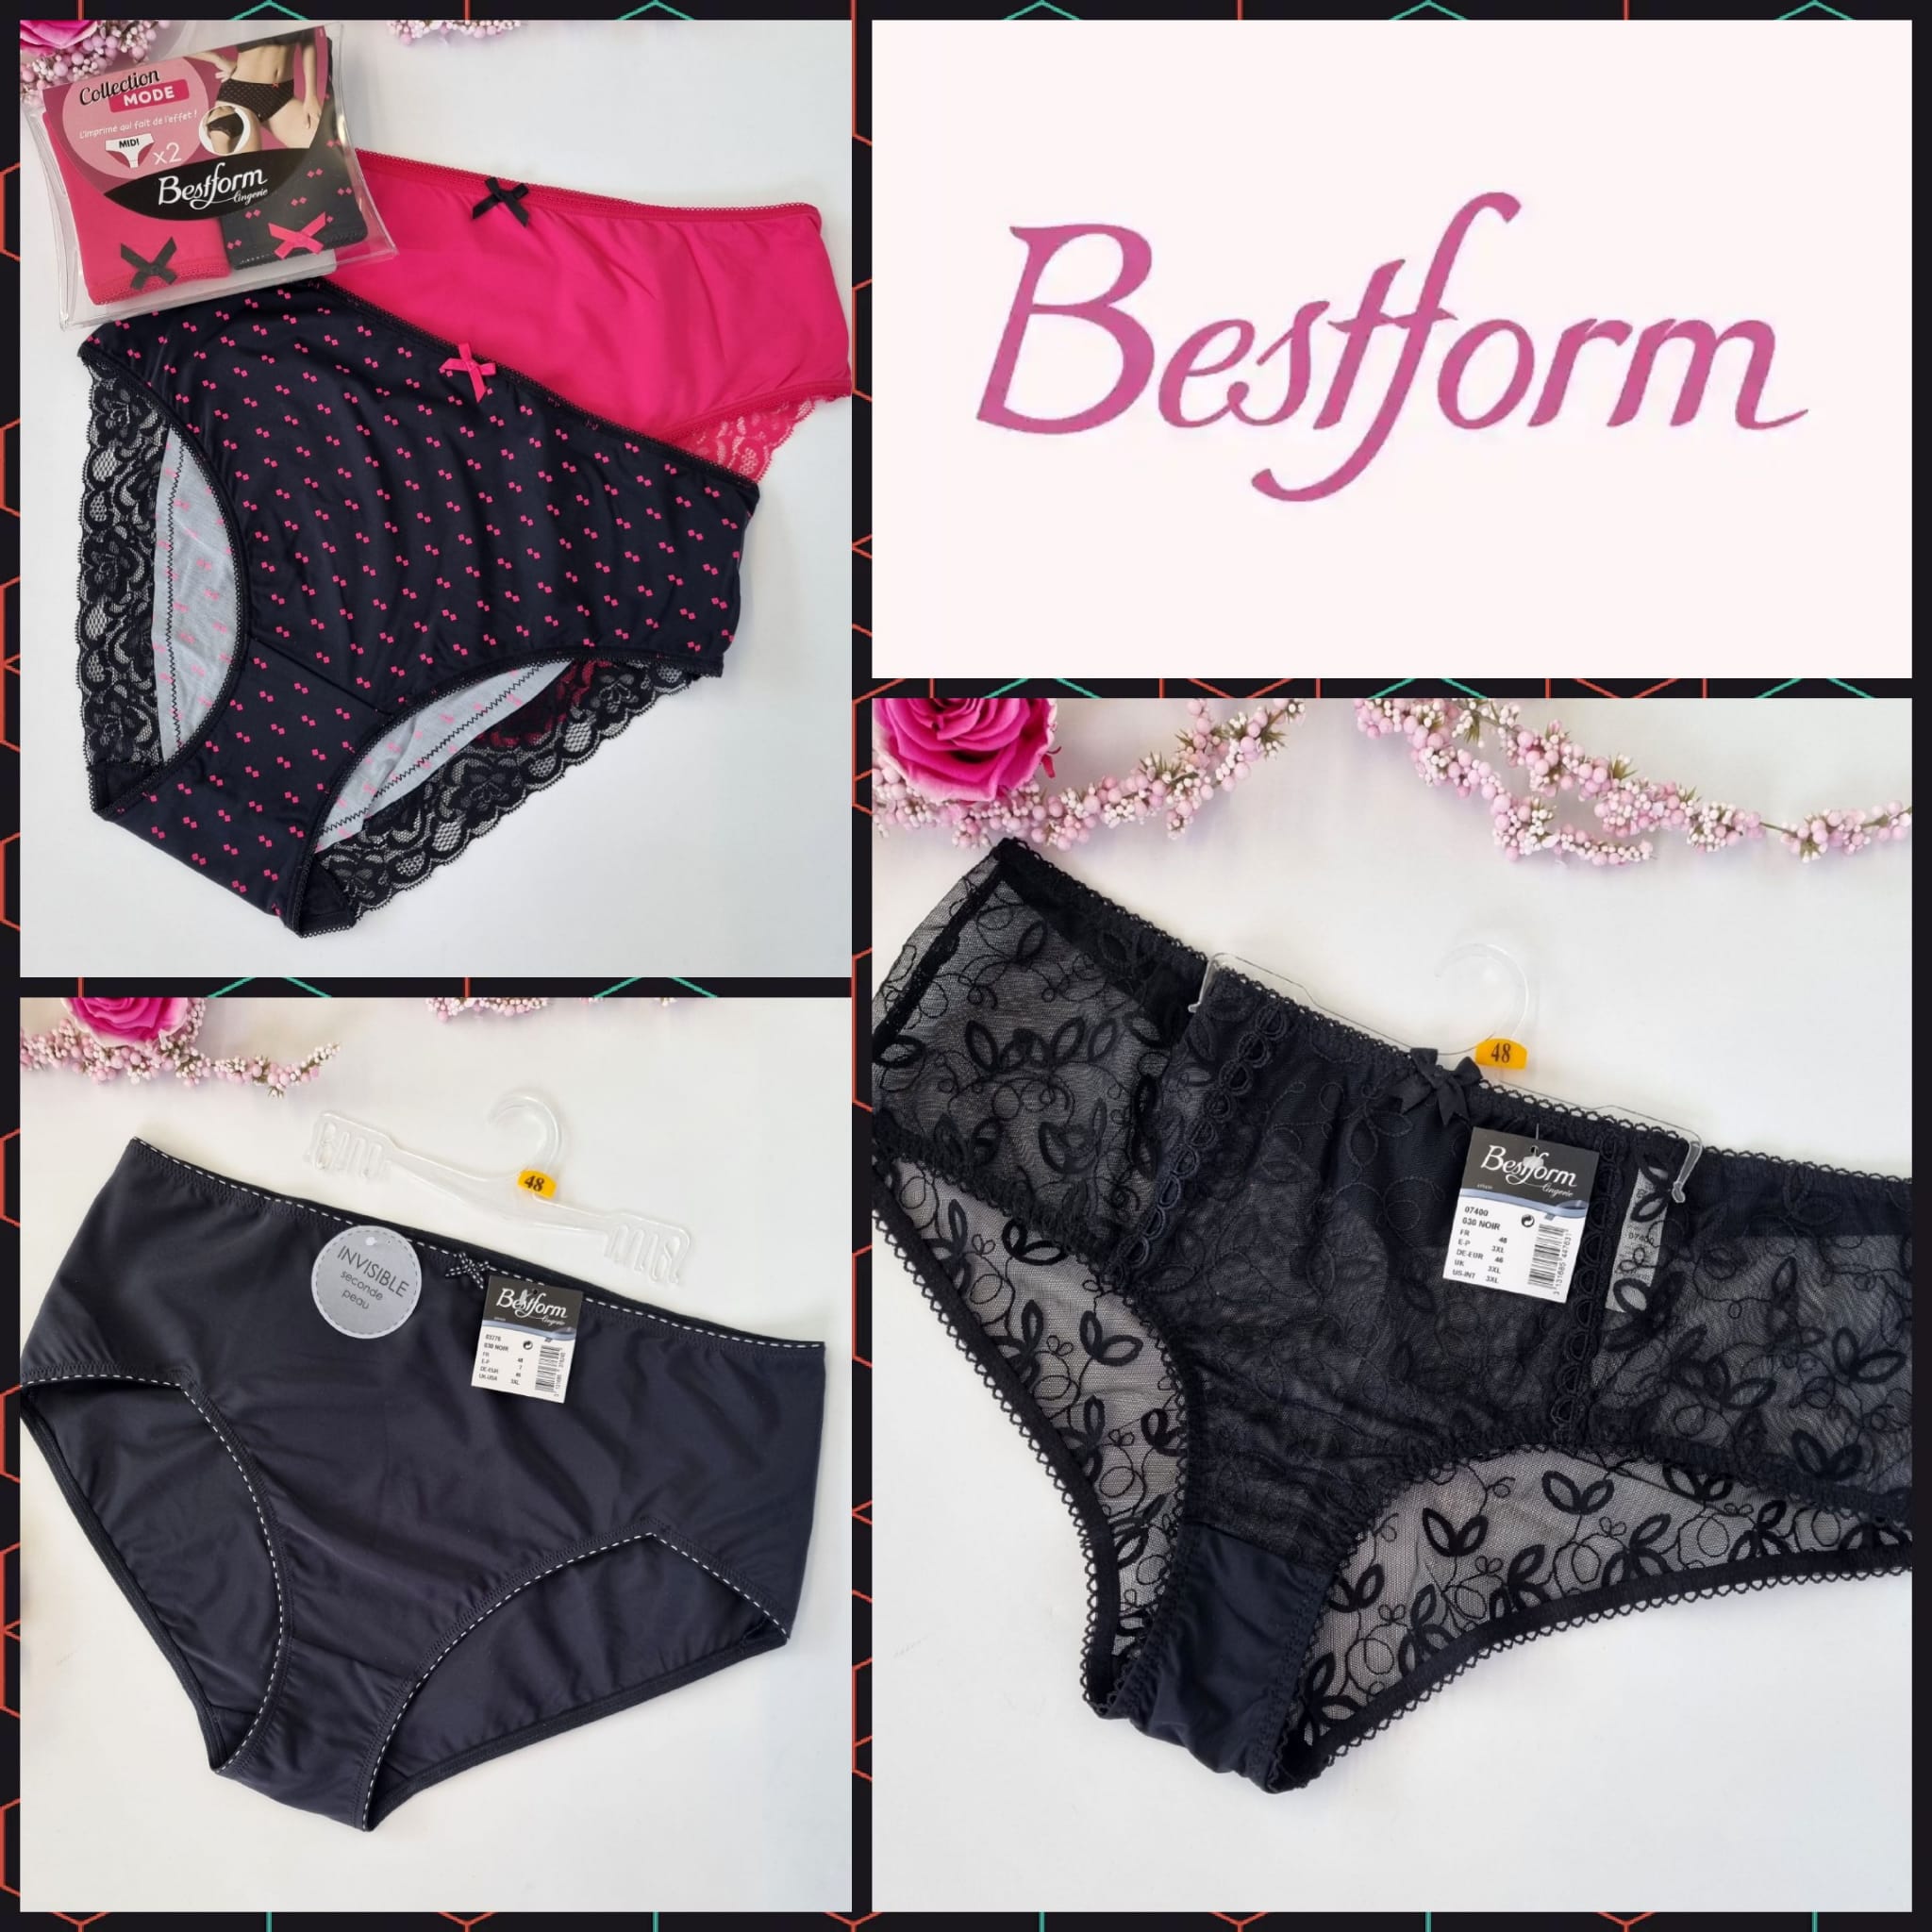 Women's panties from Bestform